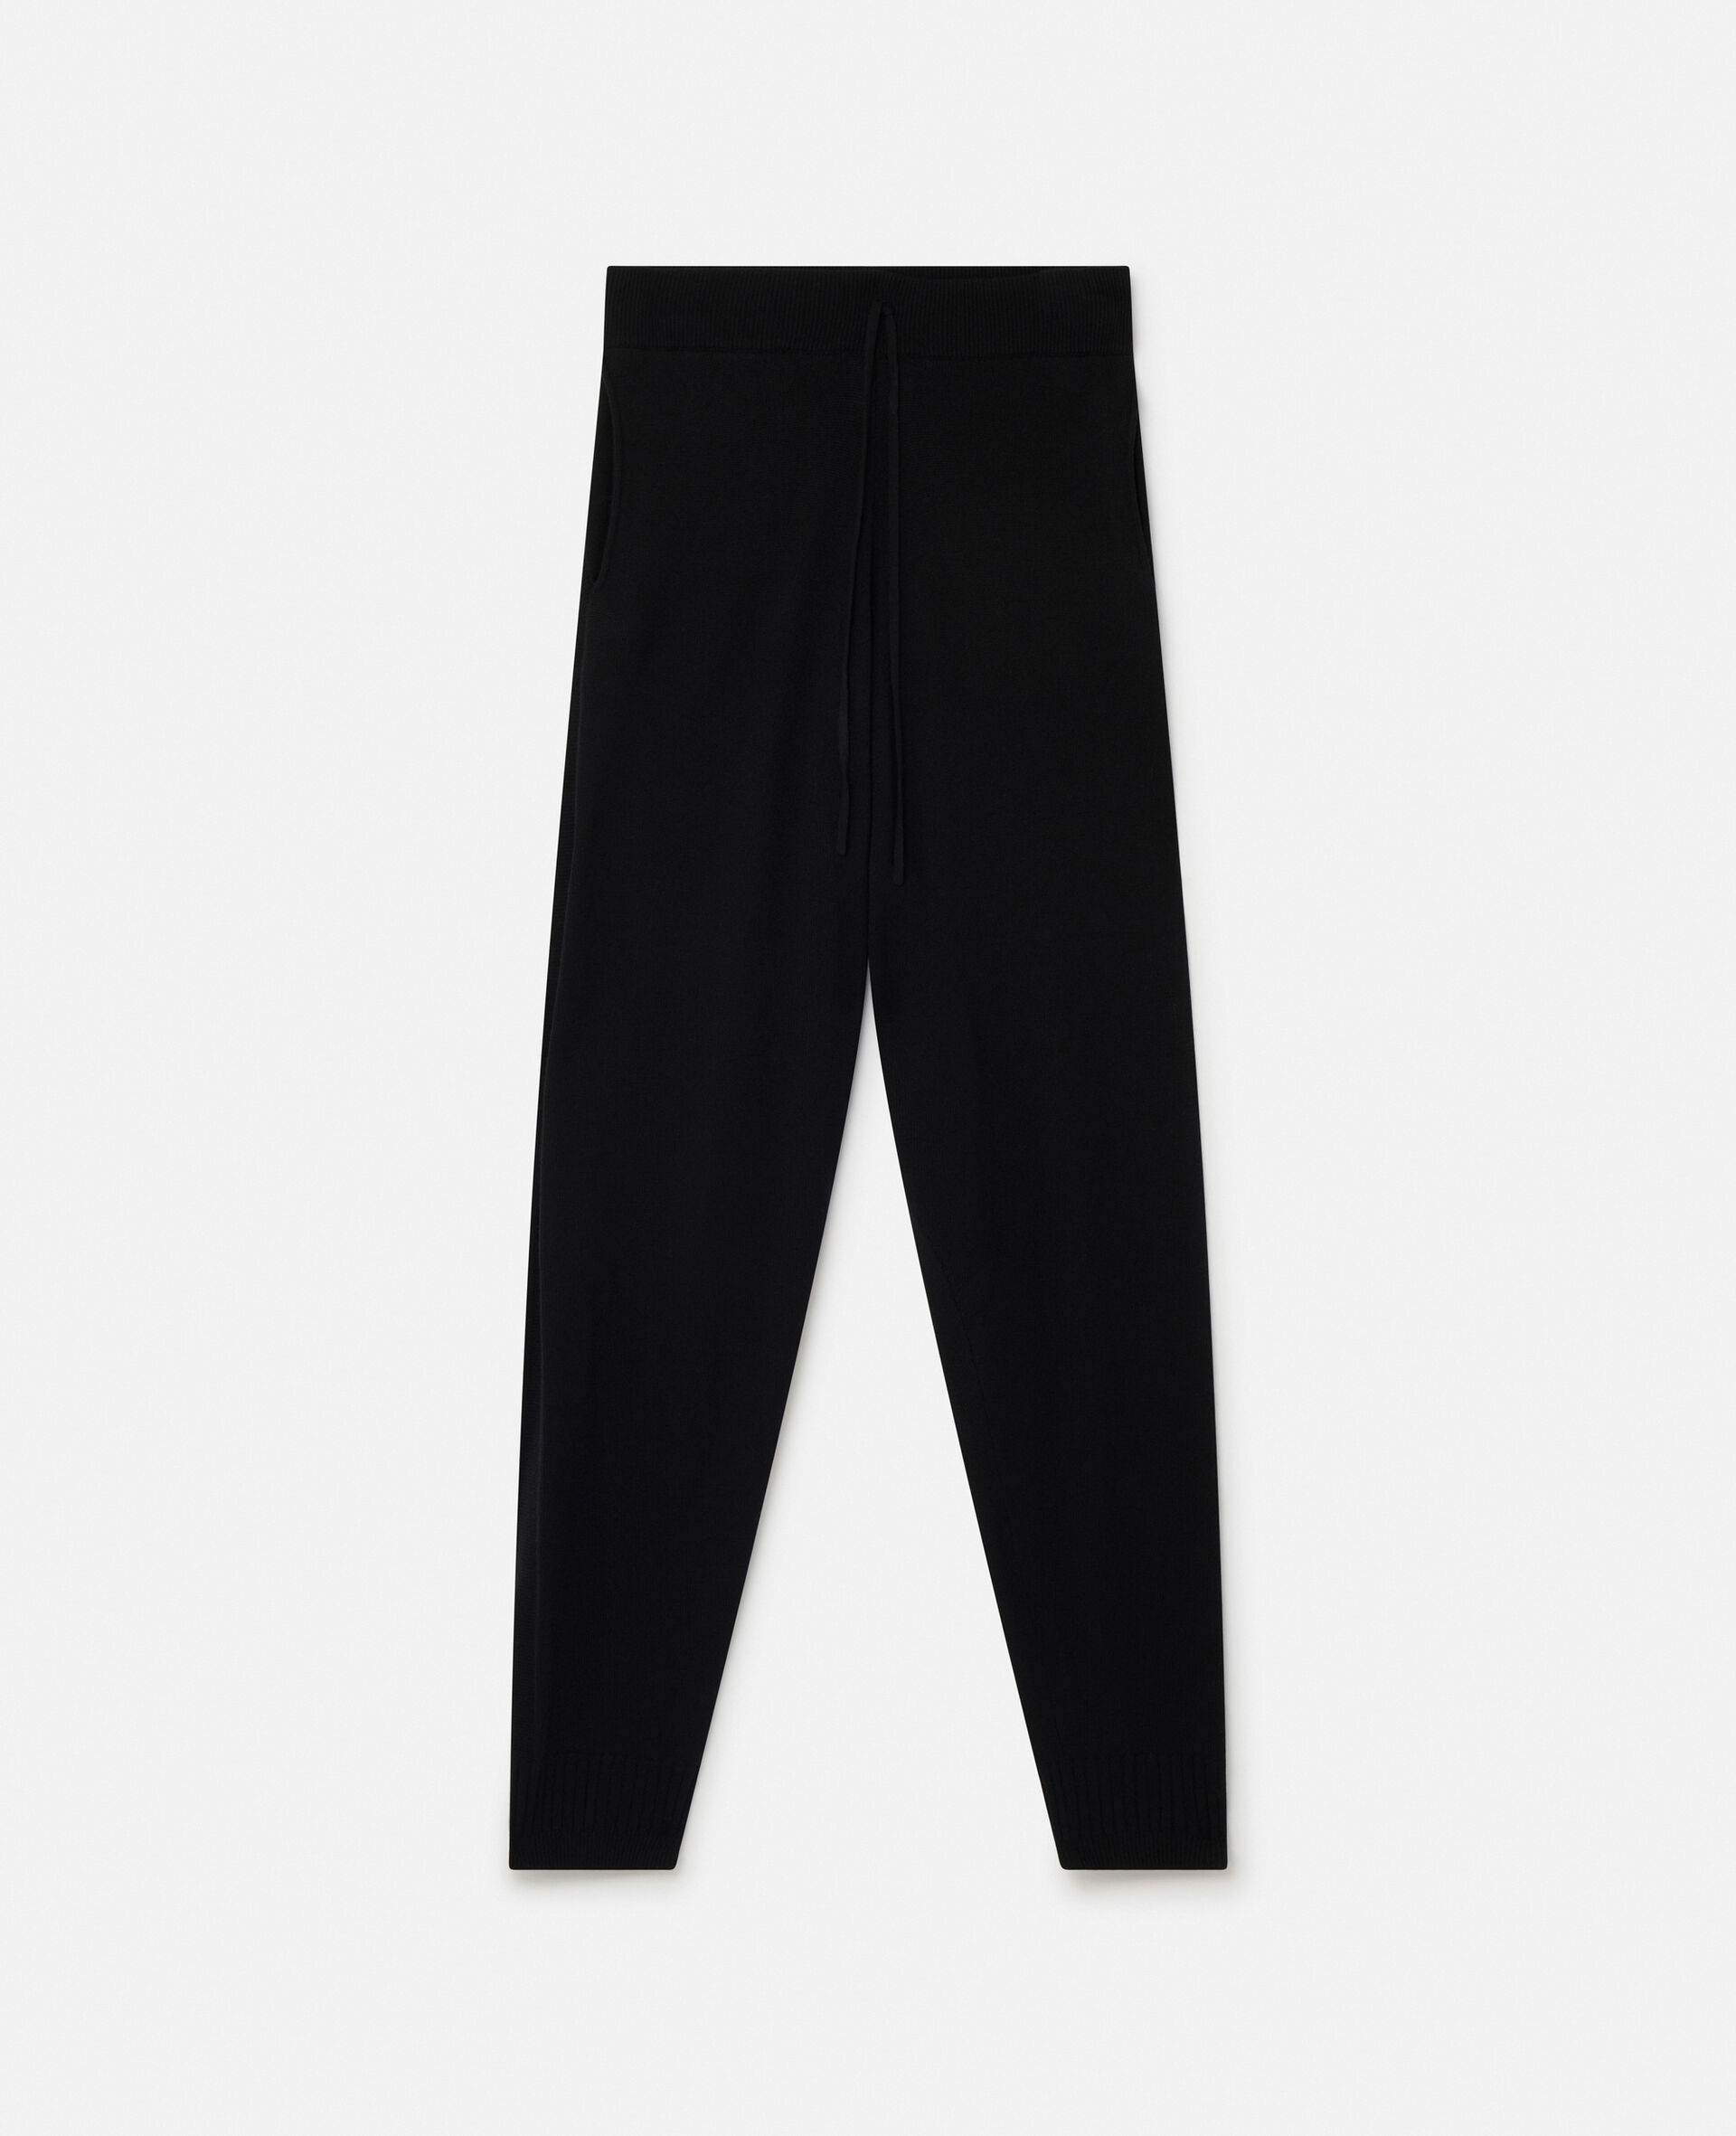 Pantalon Stella Iconics en maille fine resserré aux chevilles-Noir-medium